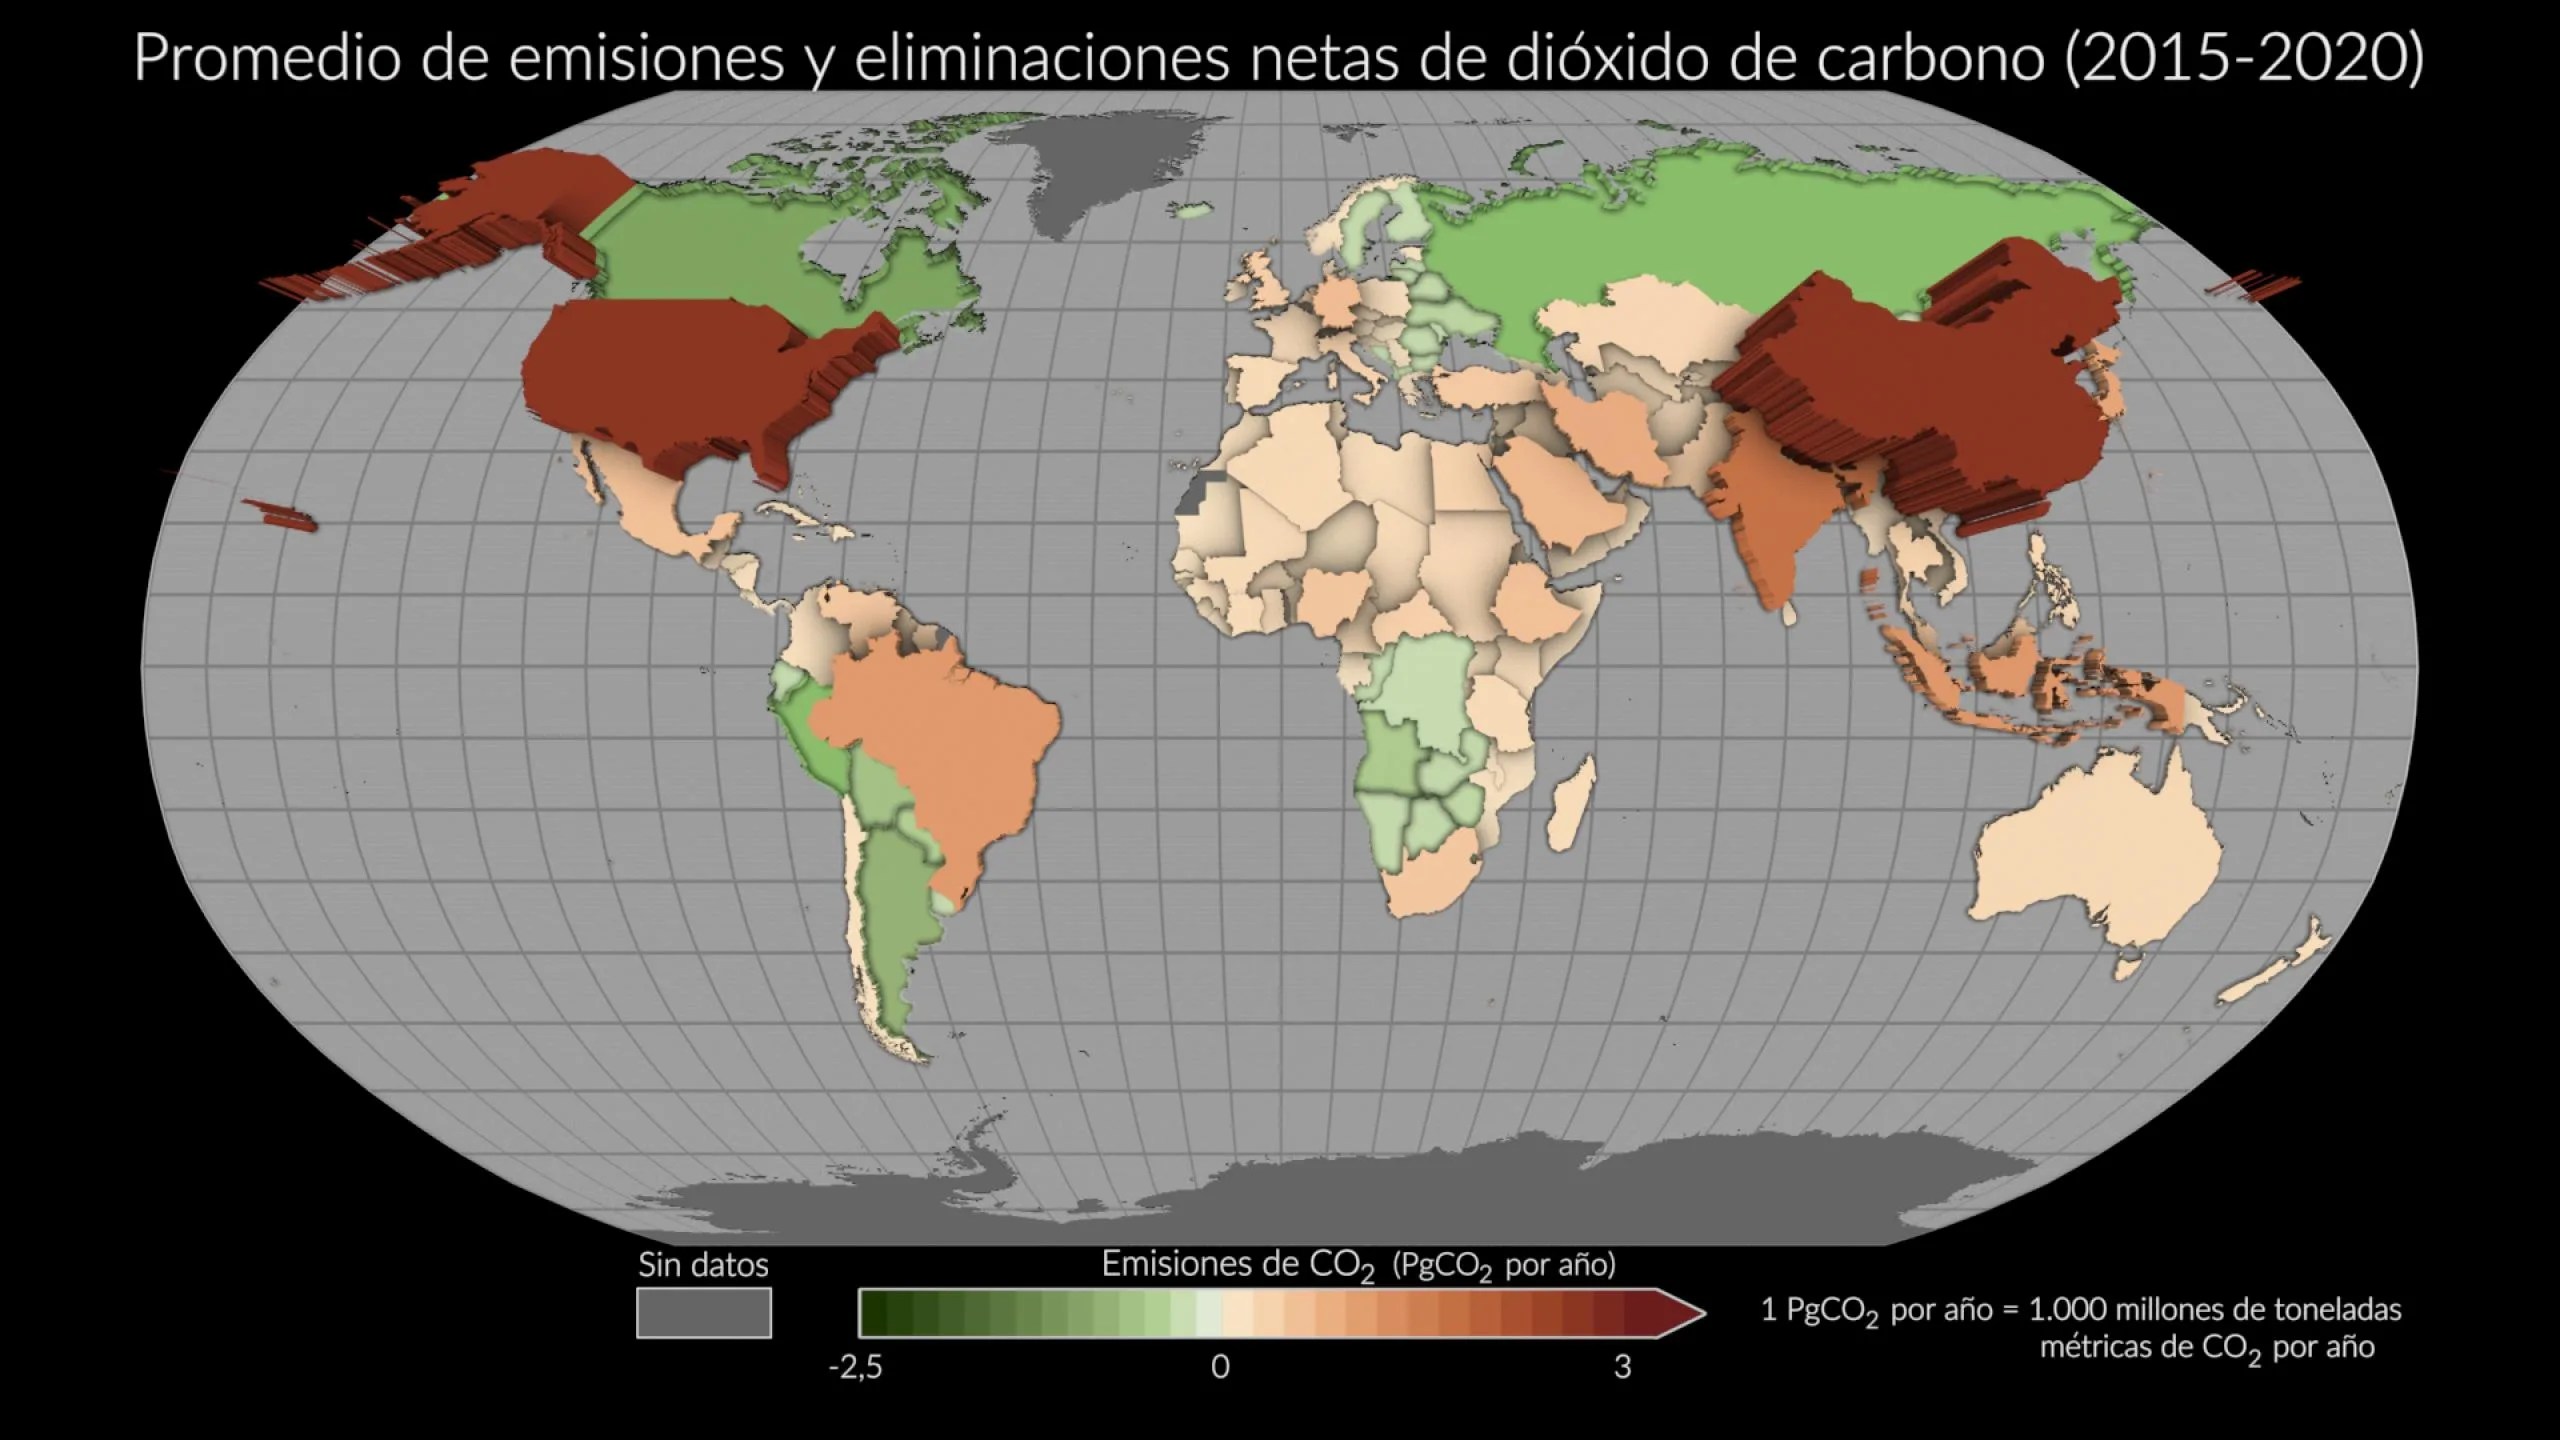 Este mapa muestra el promedio de emisiones y eliminaciones netas de dióxido de carbono entre 2015 y 2020 utilizando estimaciones informadas por las mediciones del satélite OCO-2 de la NASA. Los países en los que se eliminó más dióxido de carbono del emitido aparecen como depresiones verdes, mientras que los países con mayores emisiones son de color marrón o rojo y parecen sobresalir de la página.